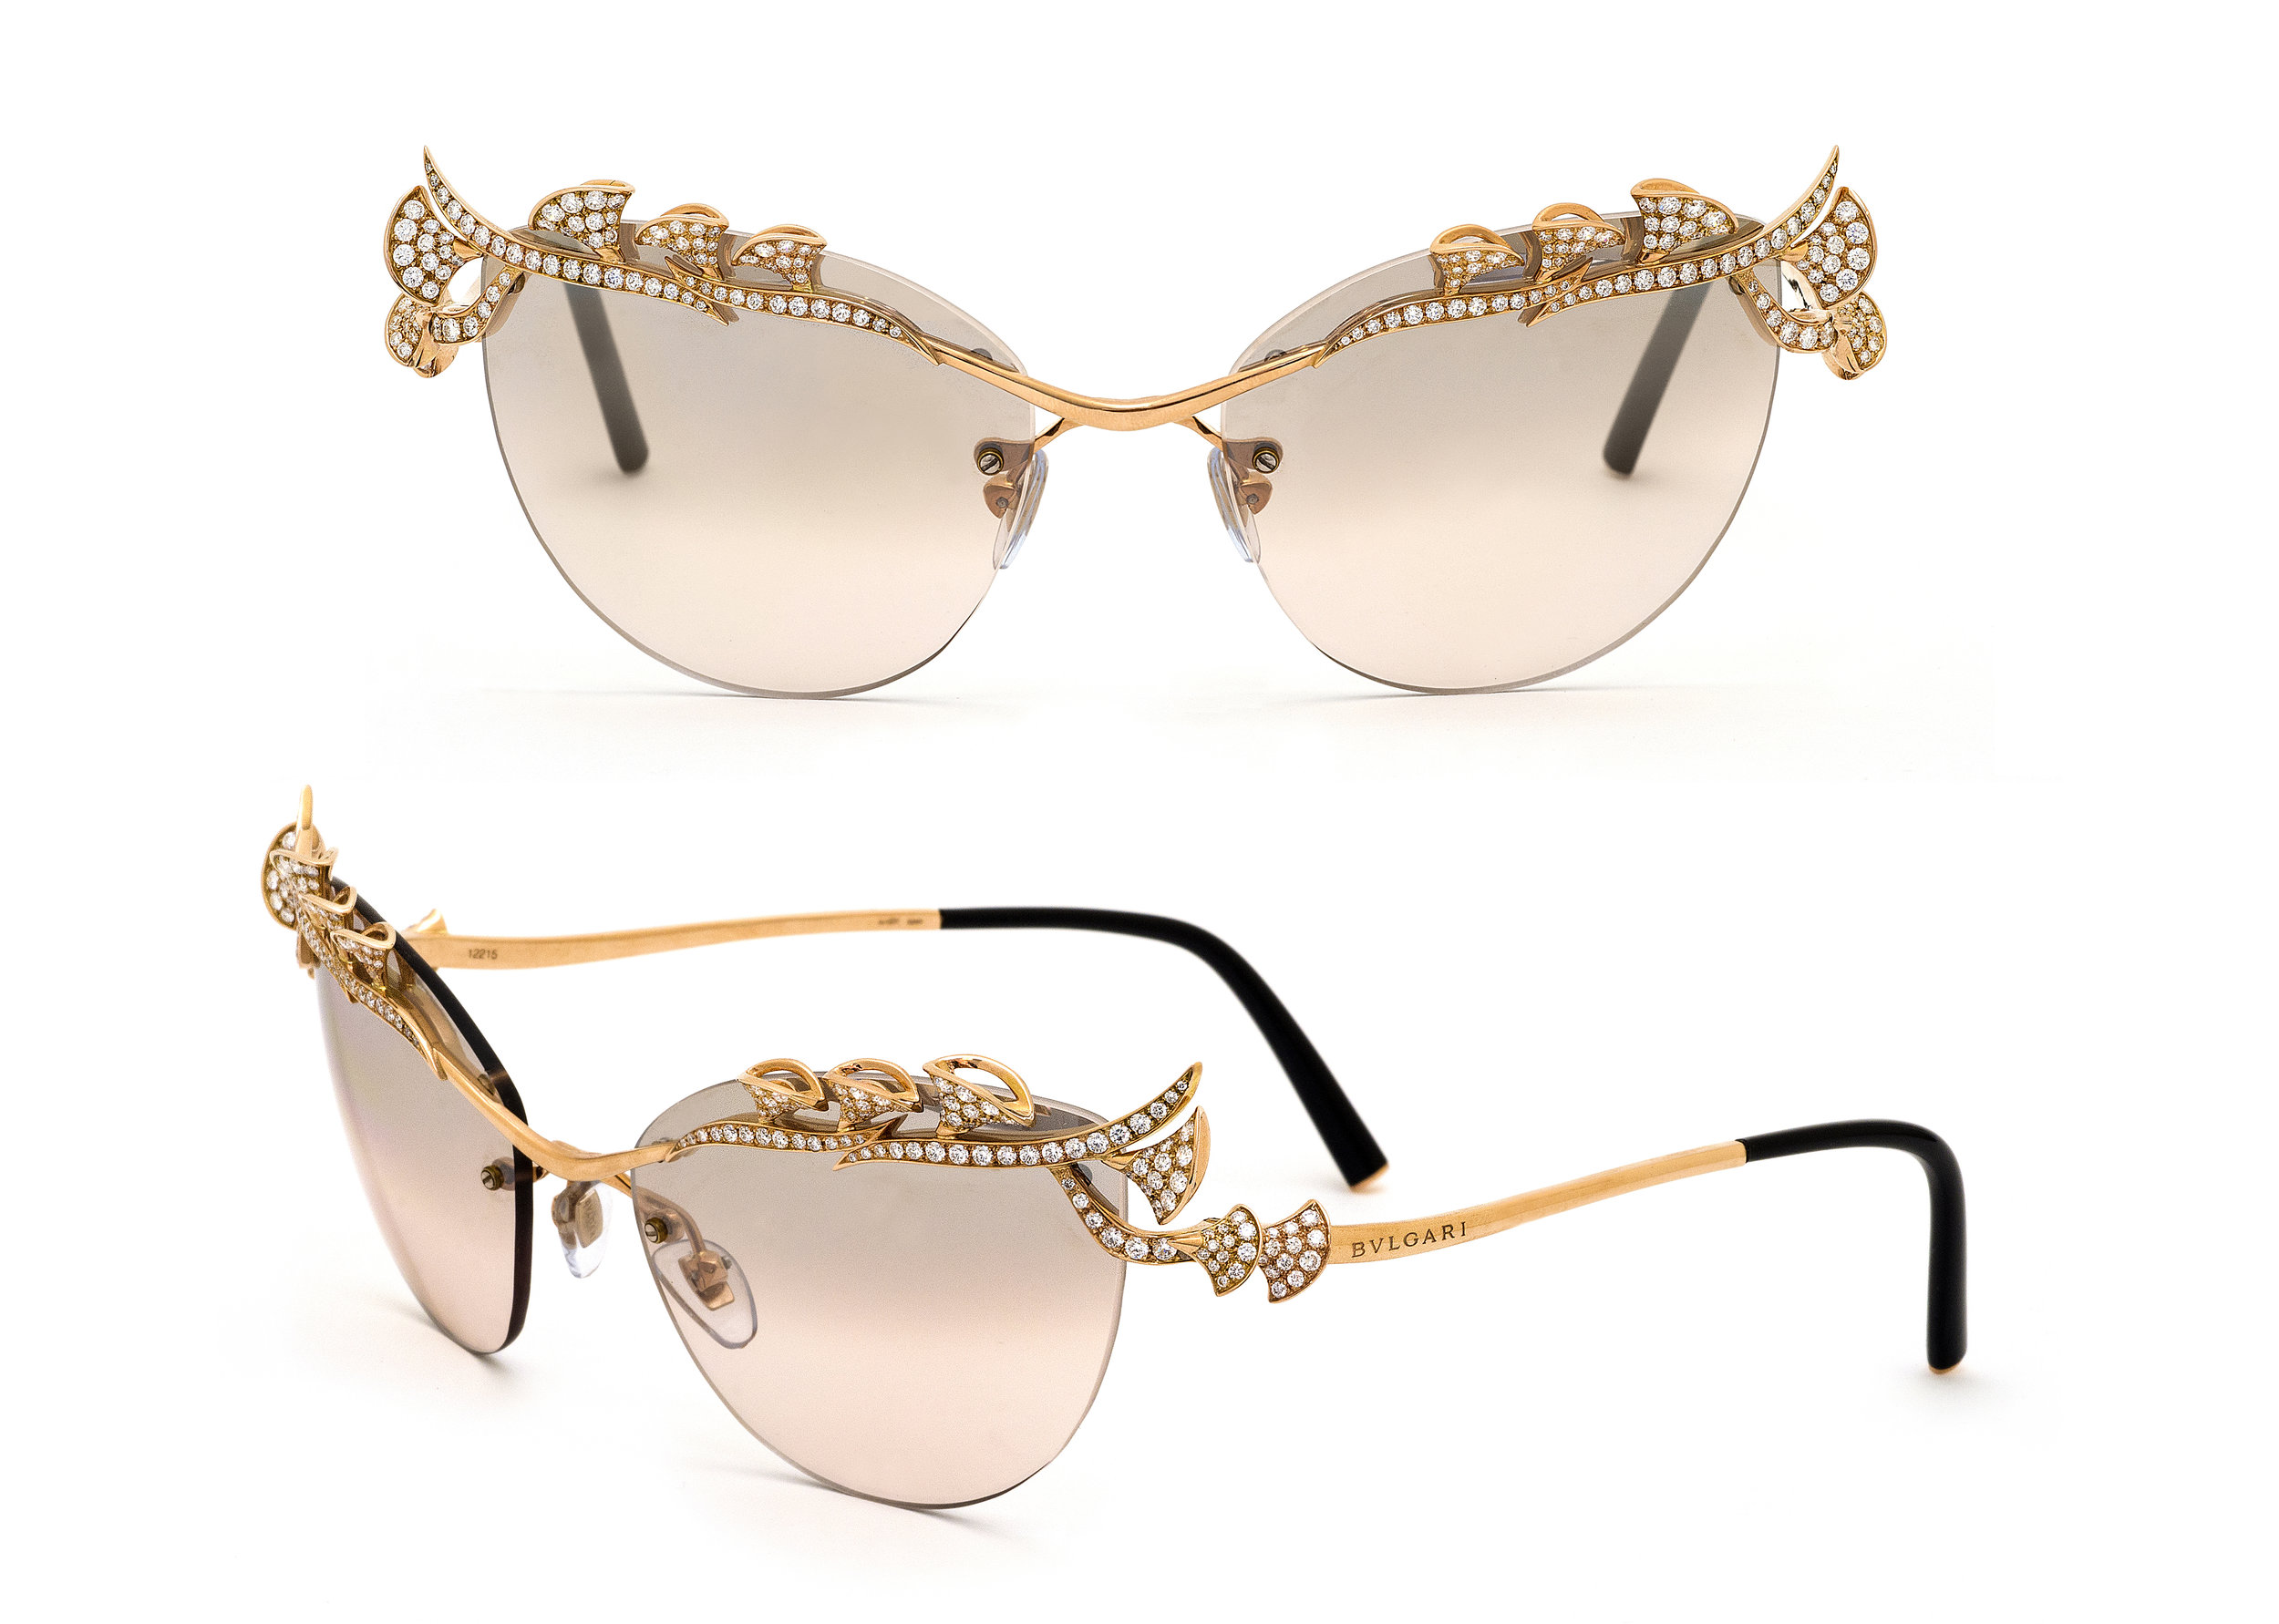 BVLGARI Pink & Diamond sunglasses by Andrew Werner .jpg